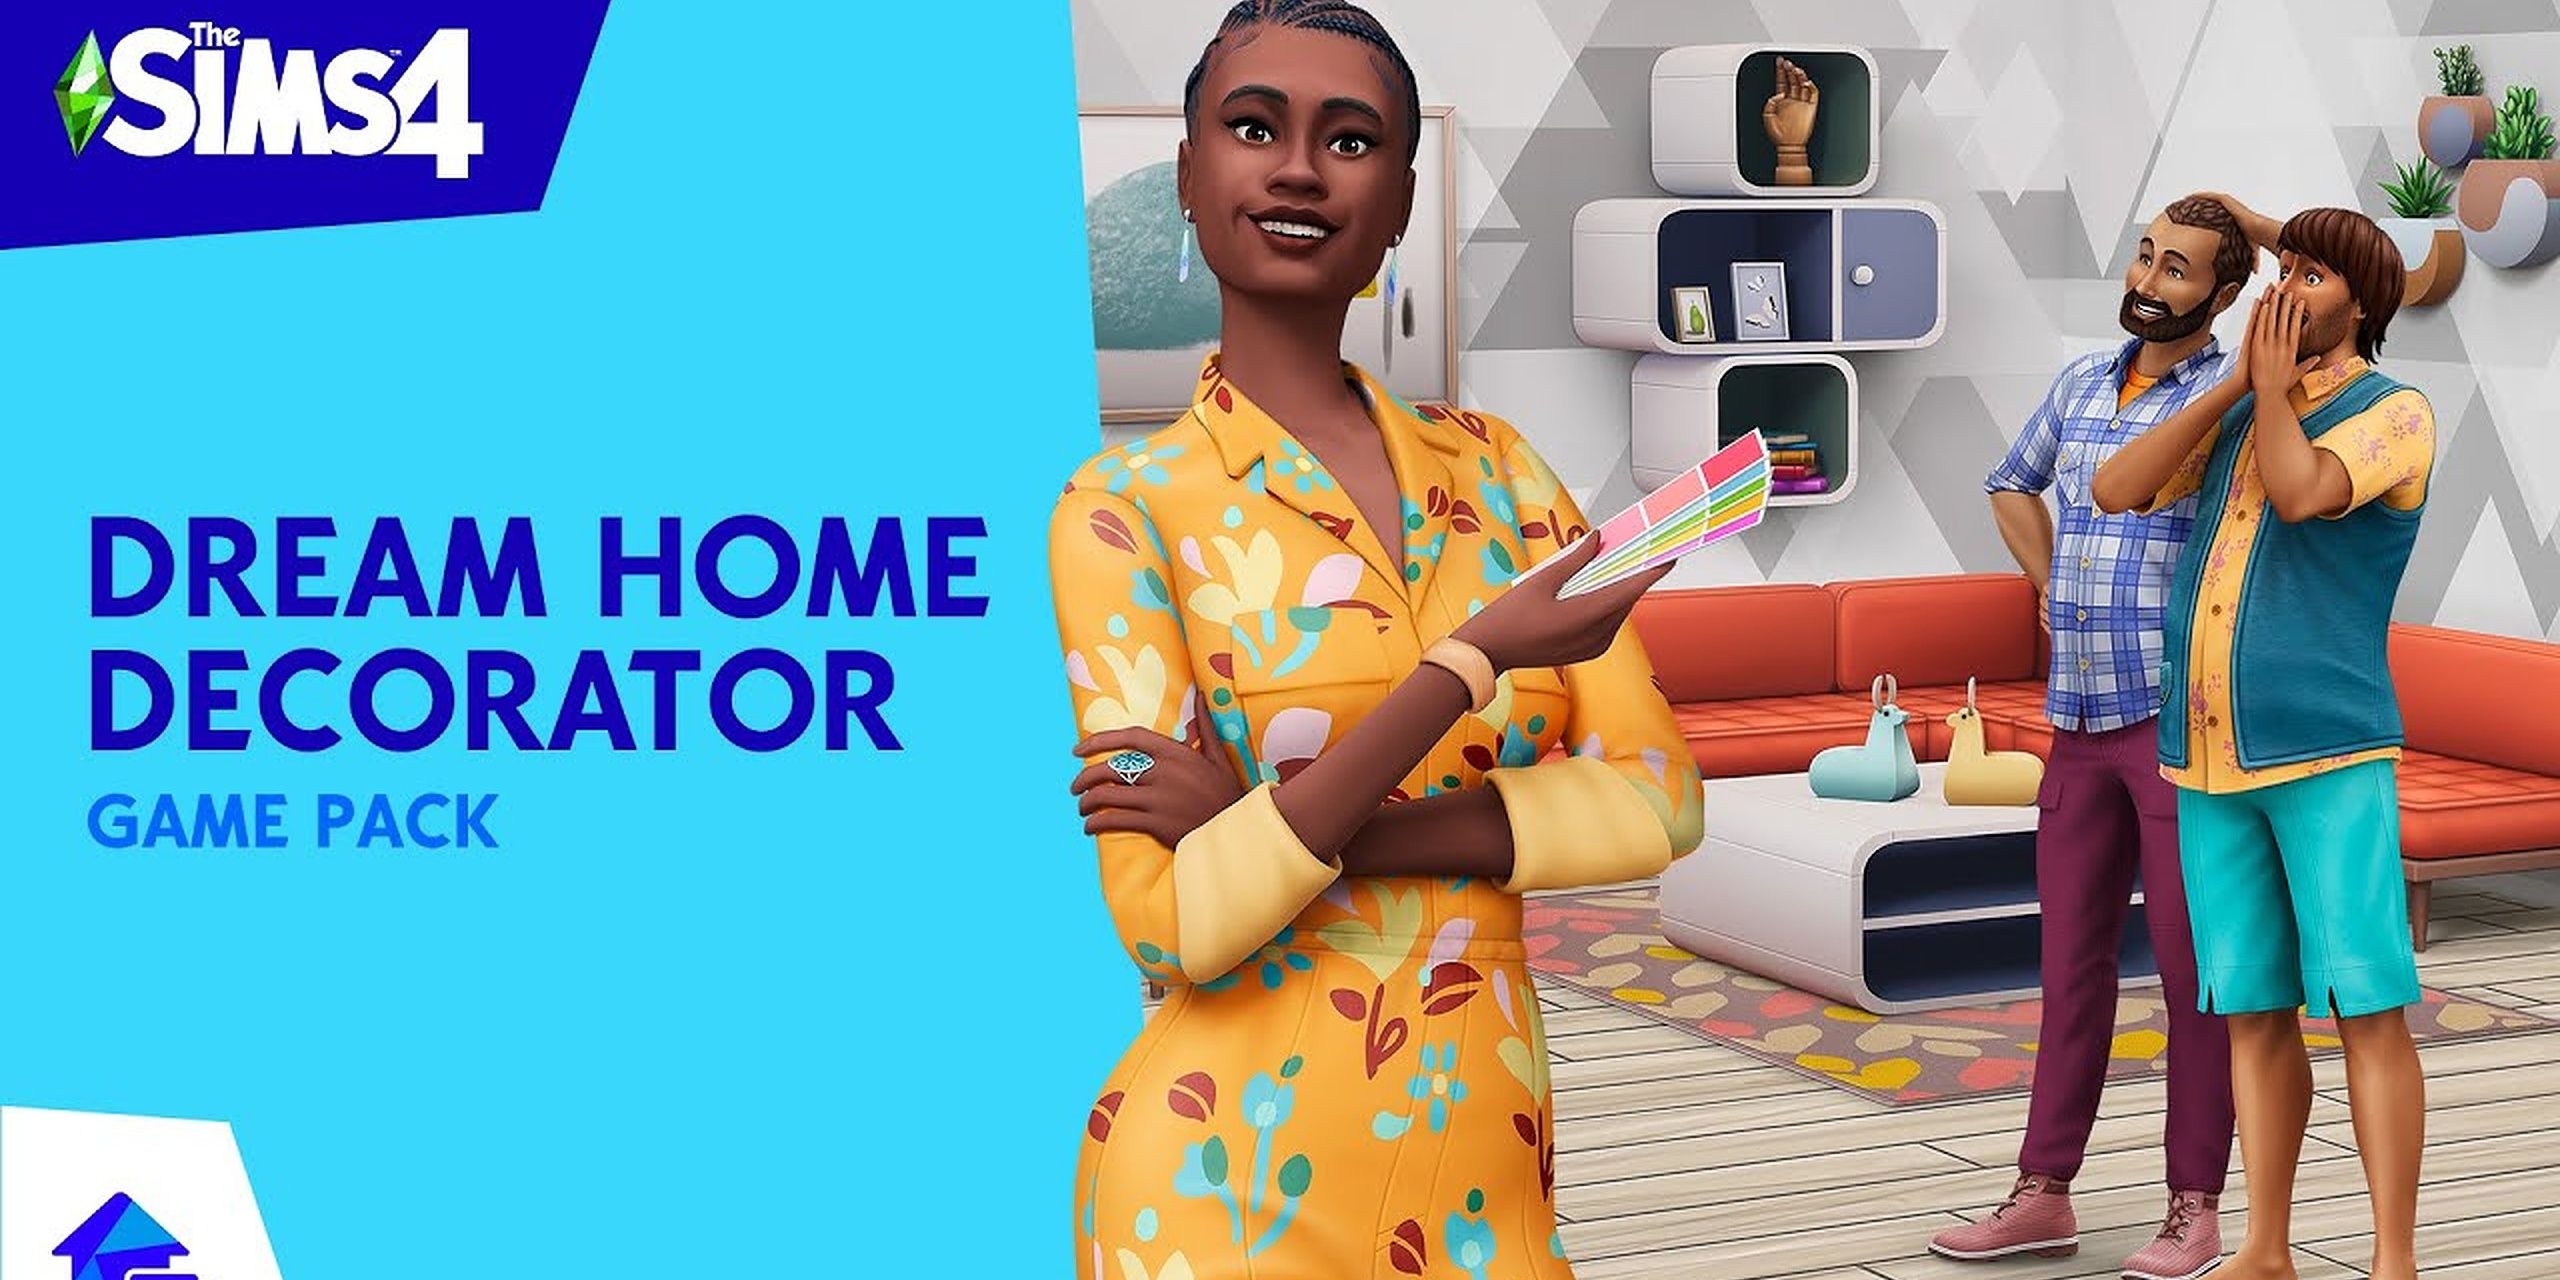 Sims 4 набор декораторов для дома мечты